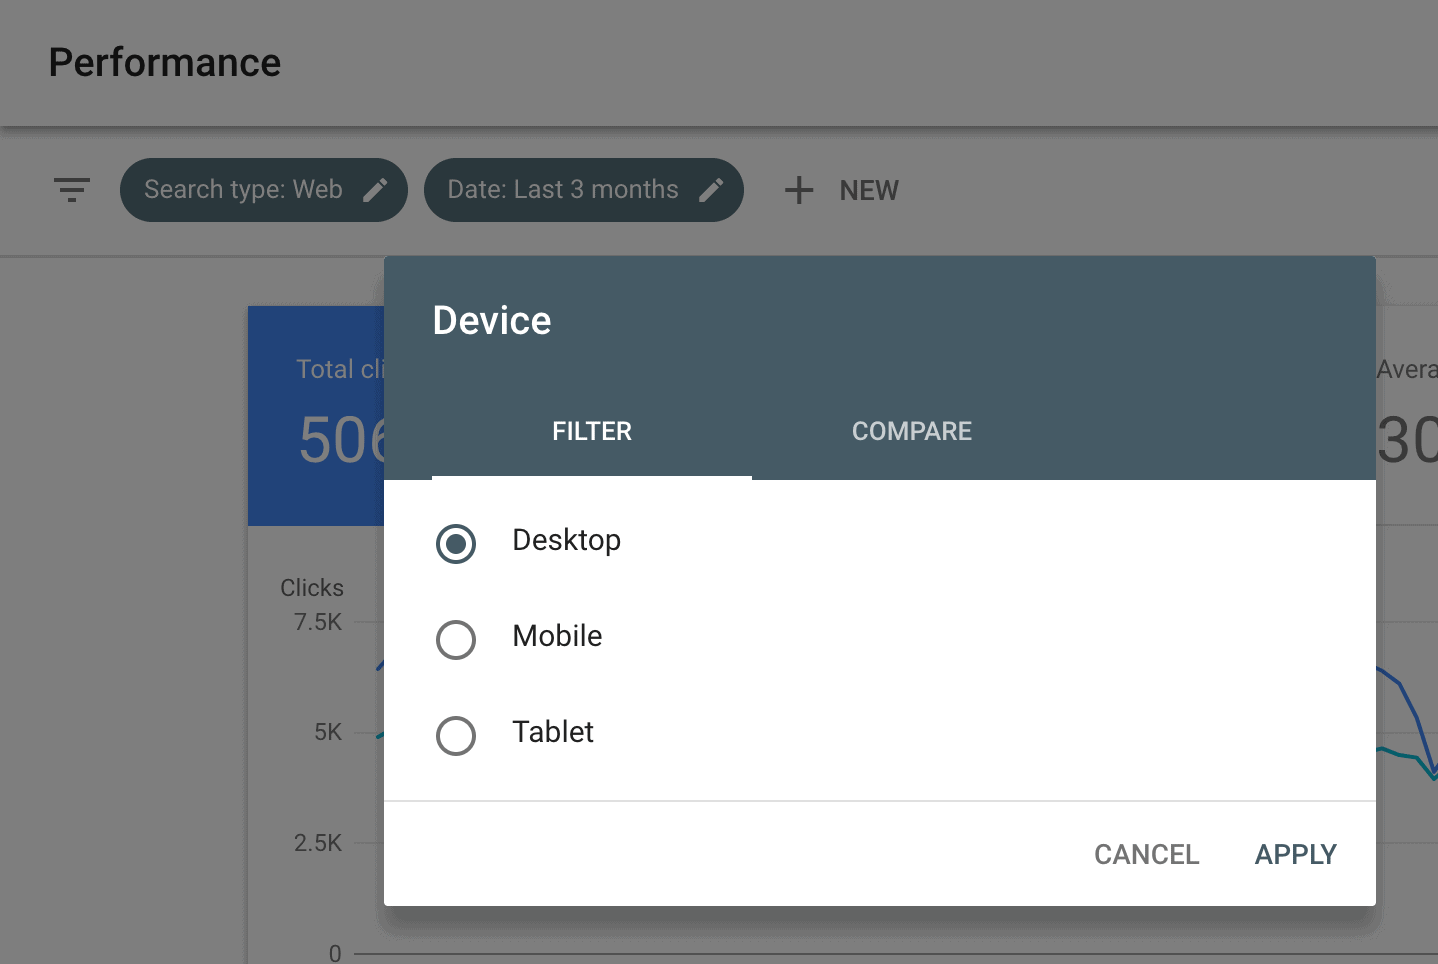 Click "Device" in Google Search Console